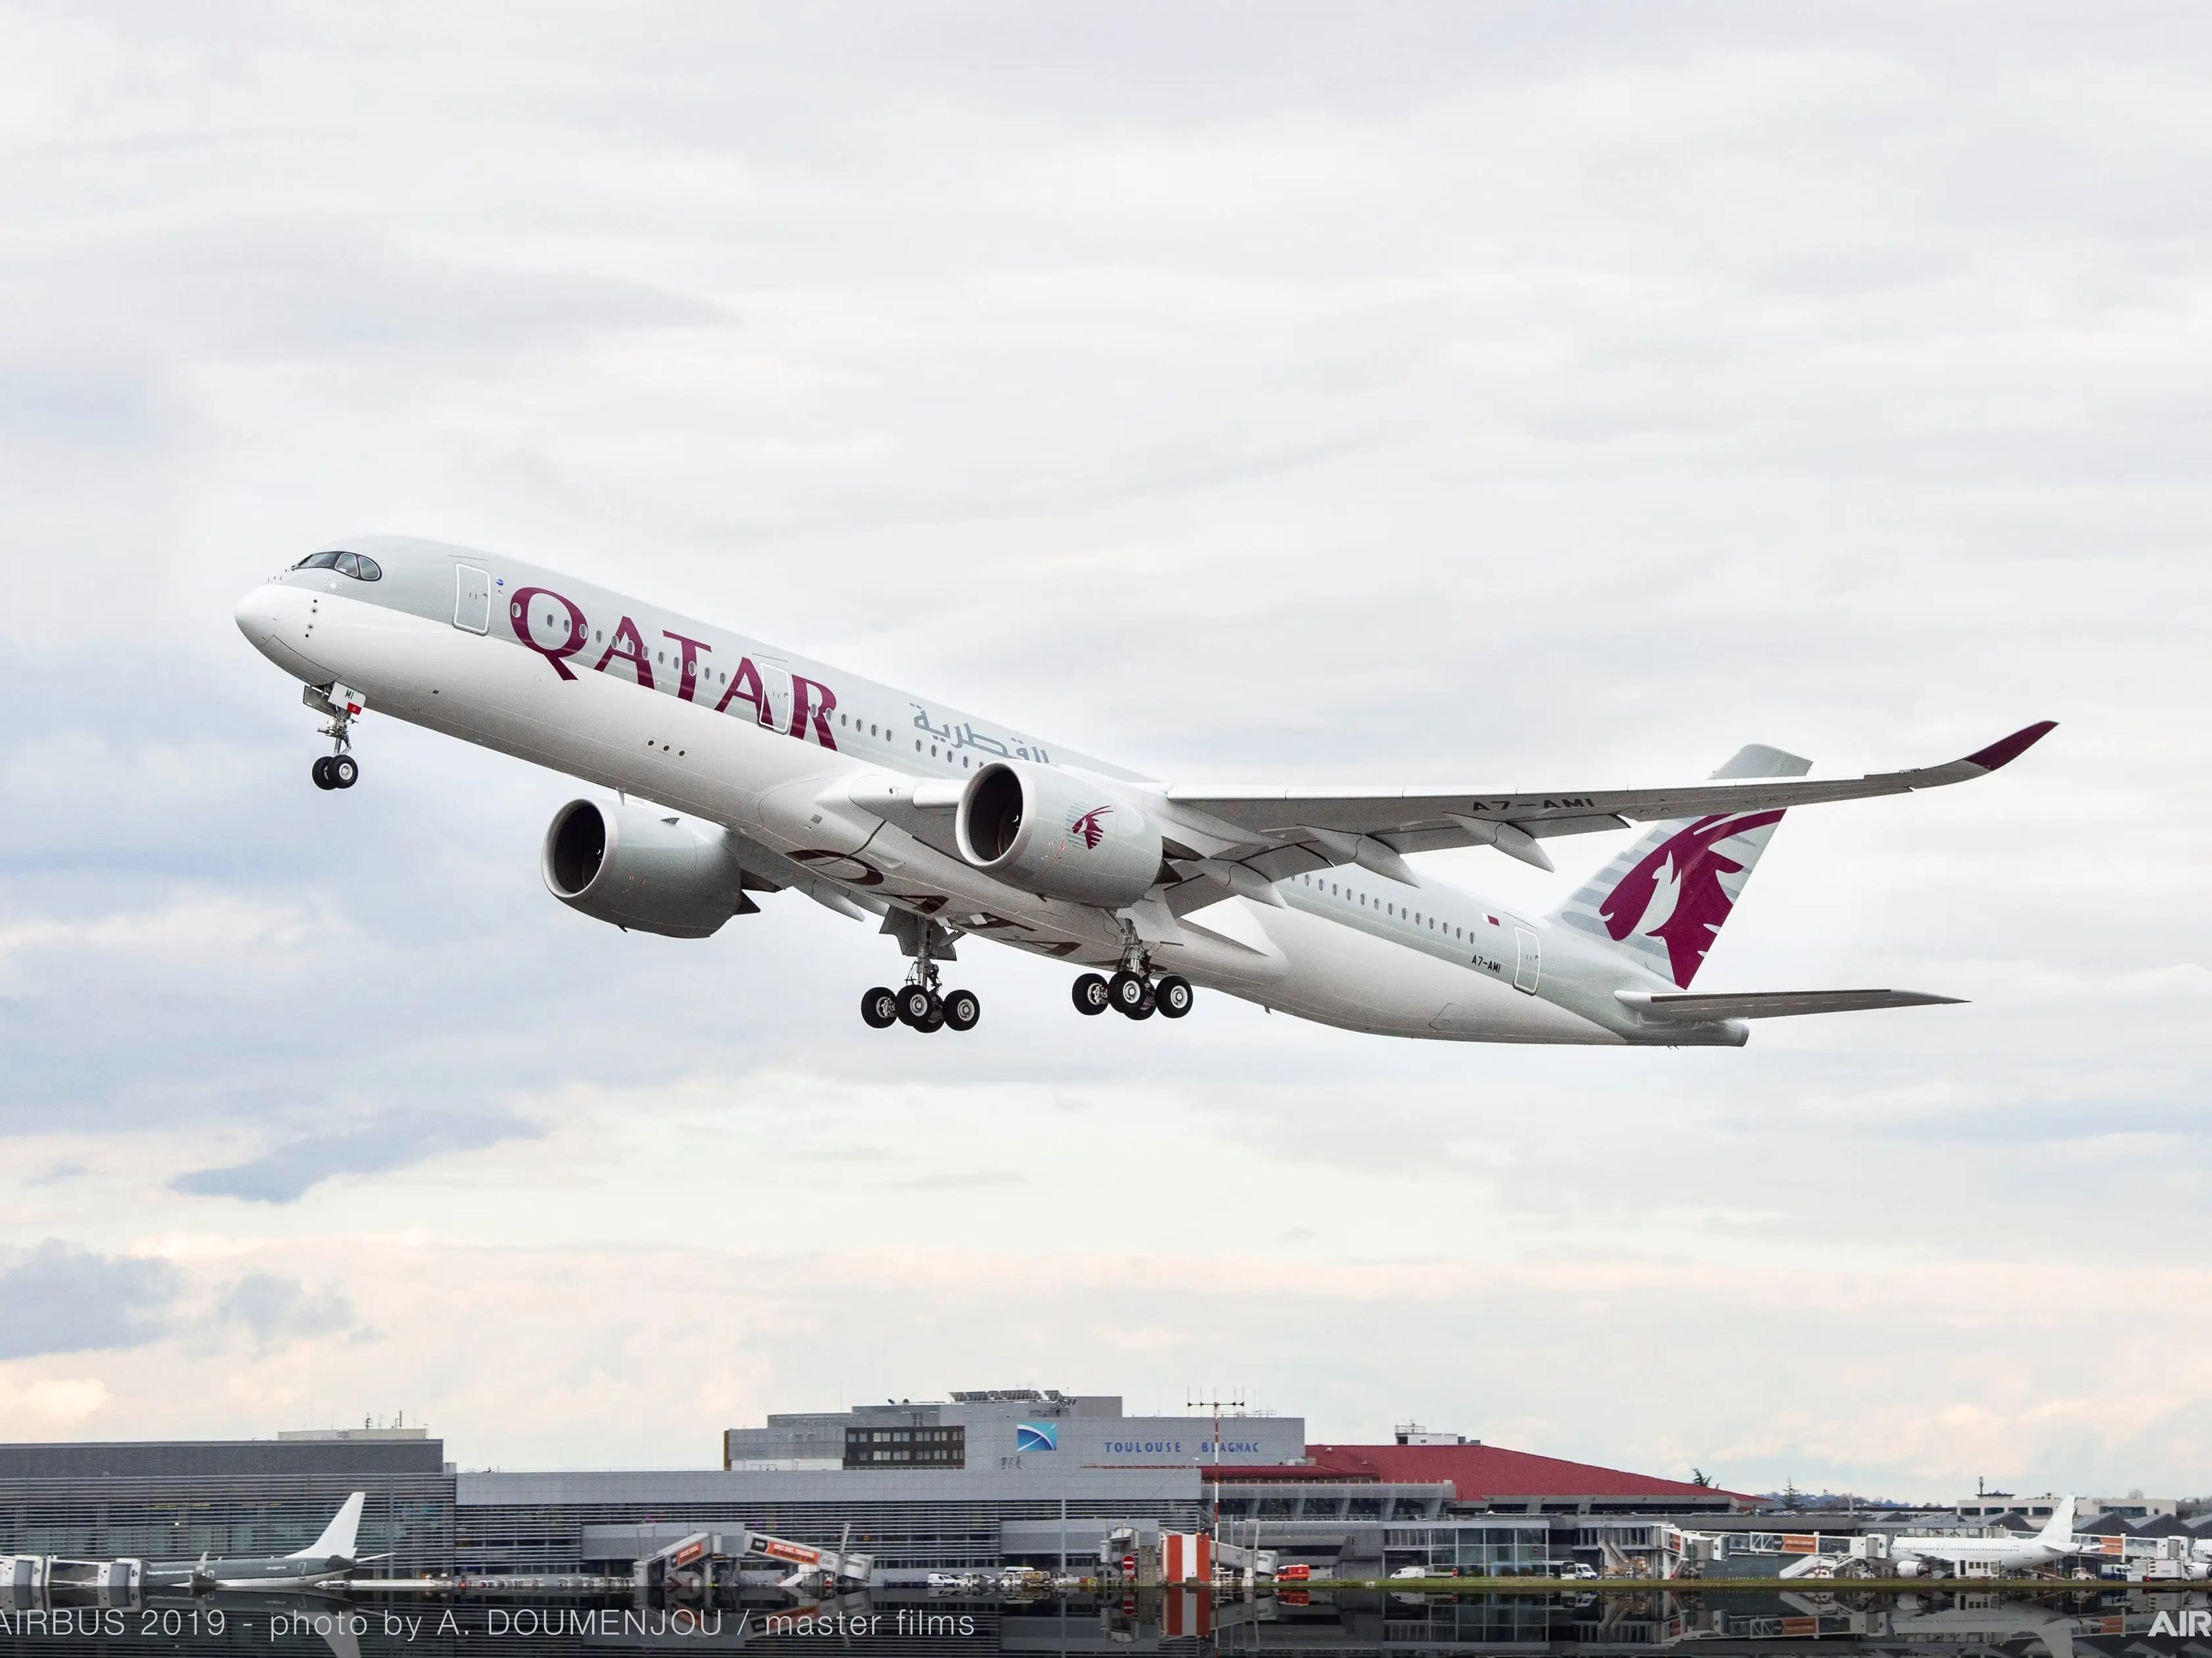 A Qatar Airways A350-900 aircraft taking off.